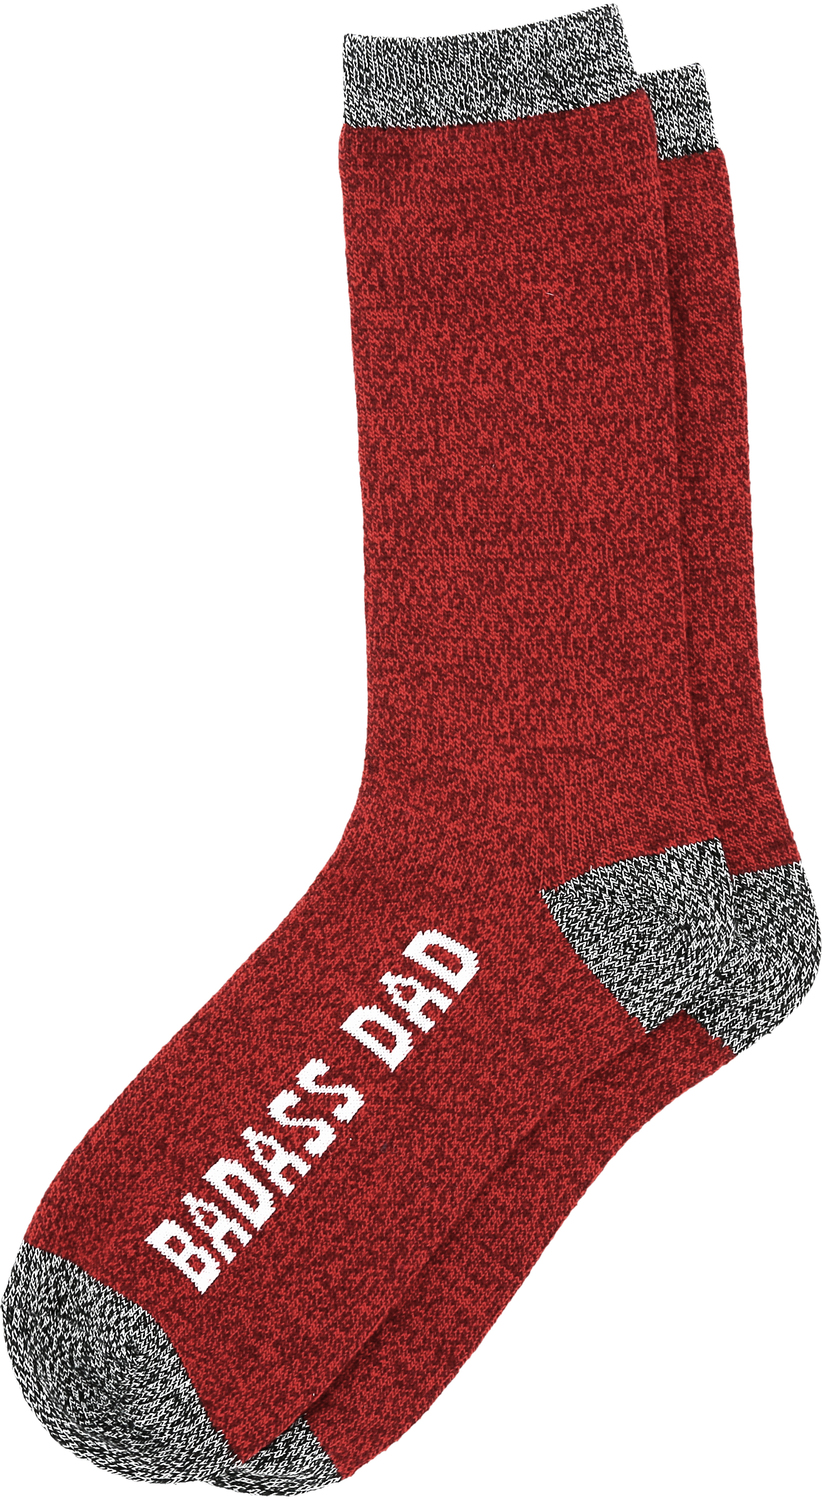 Badass by Man Made - Badass - Men's Socks